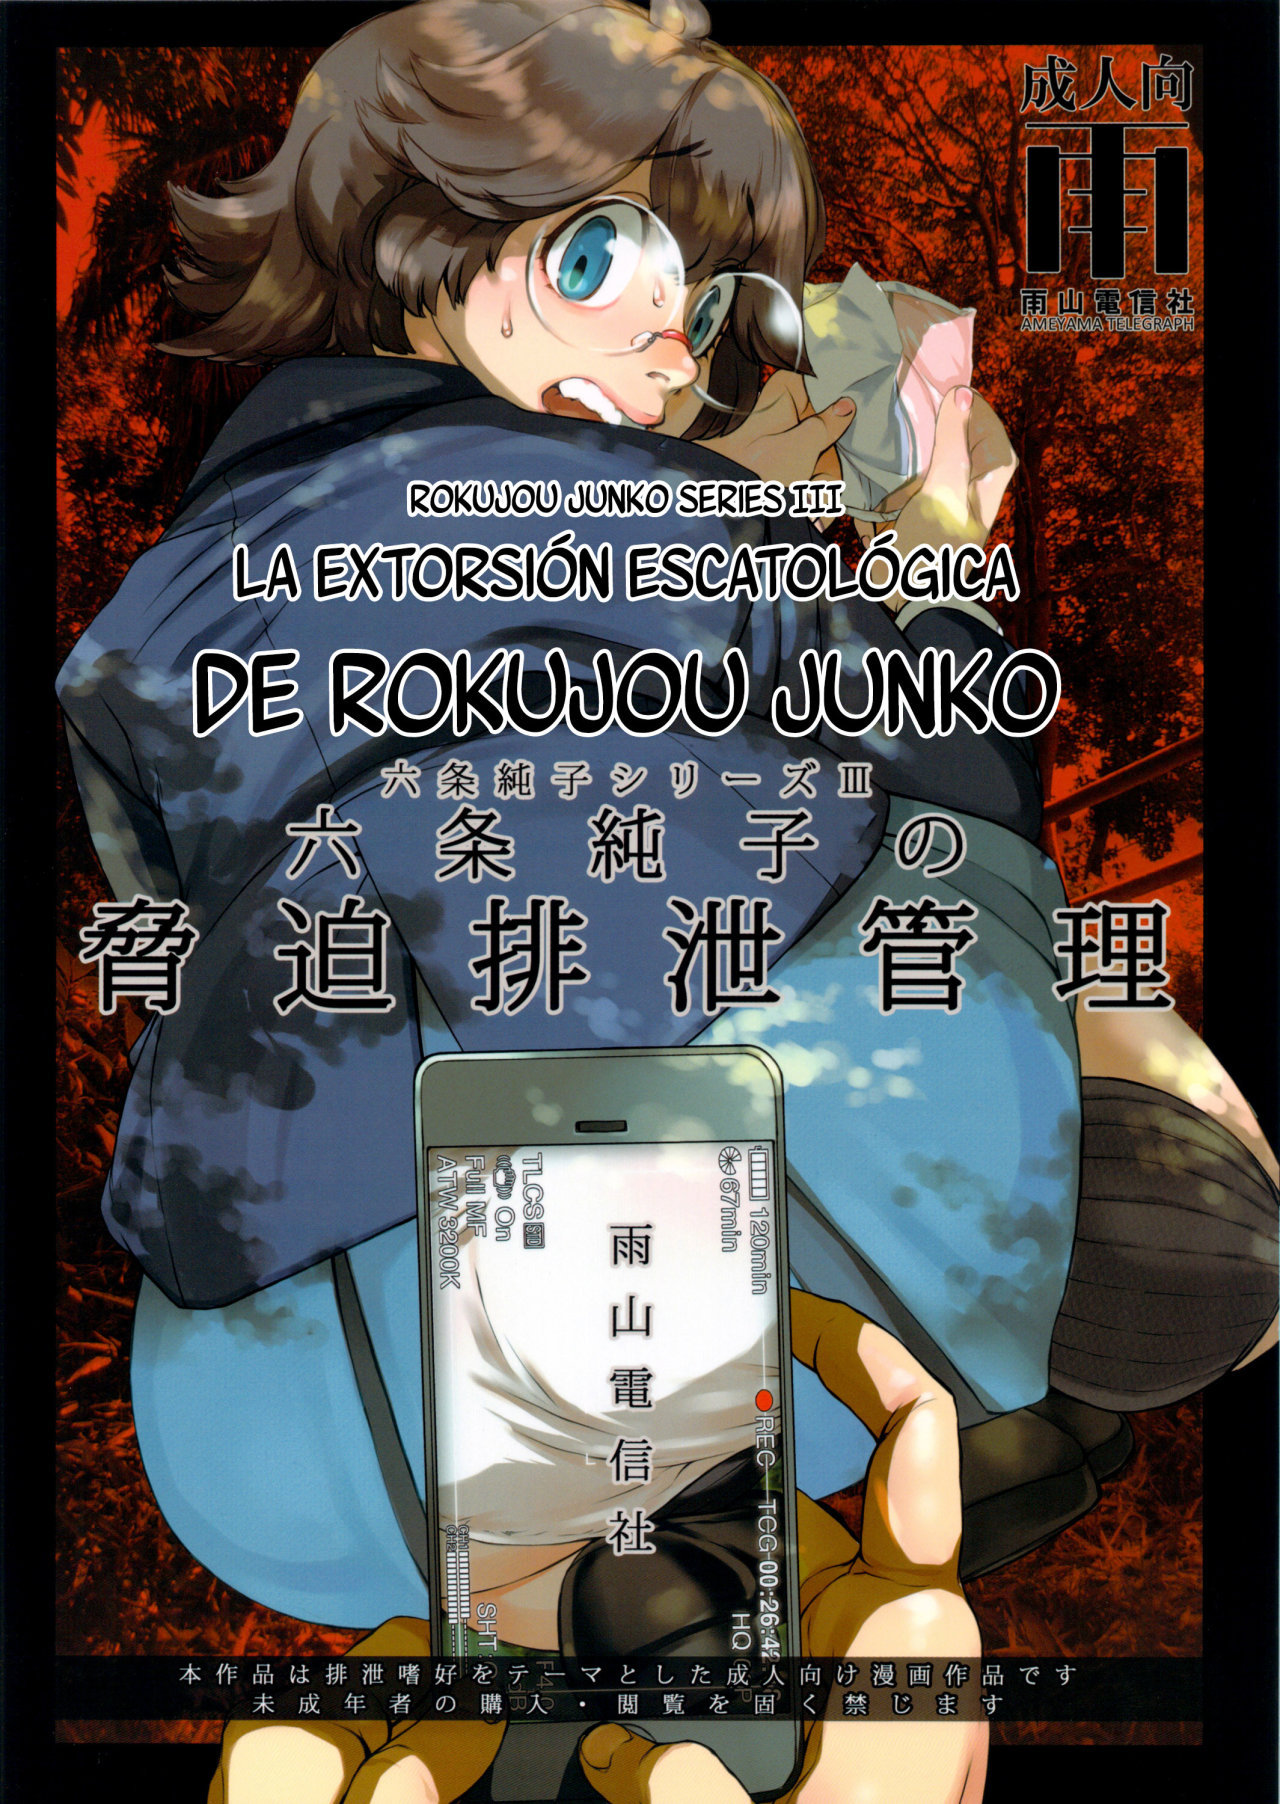 La extorsion escatologica de Rokujou Junko - Ameyama Denshin - 0